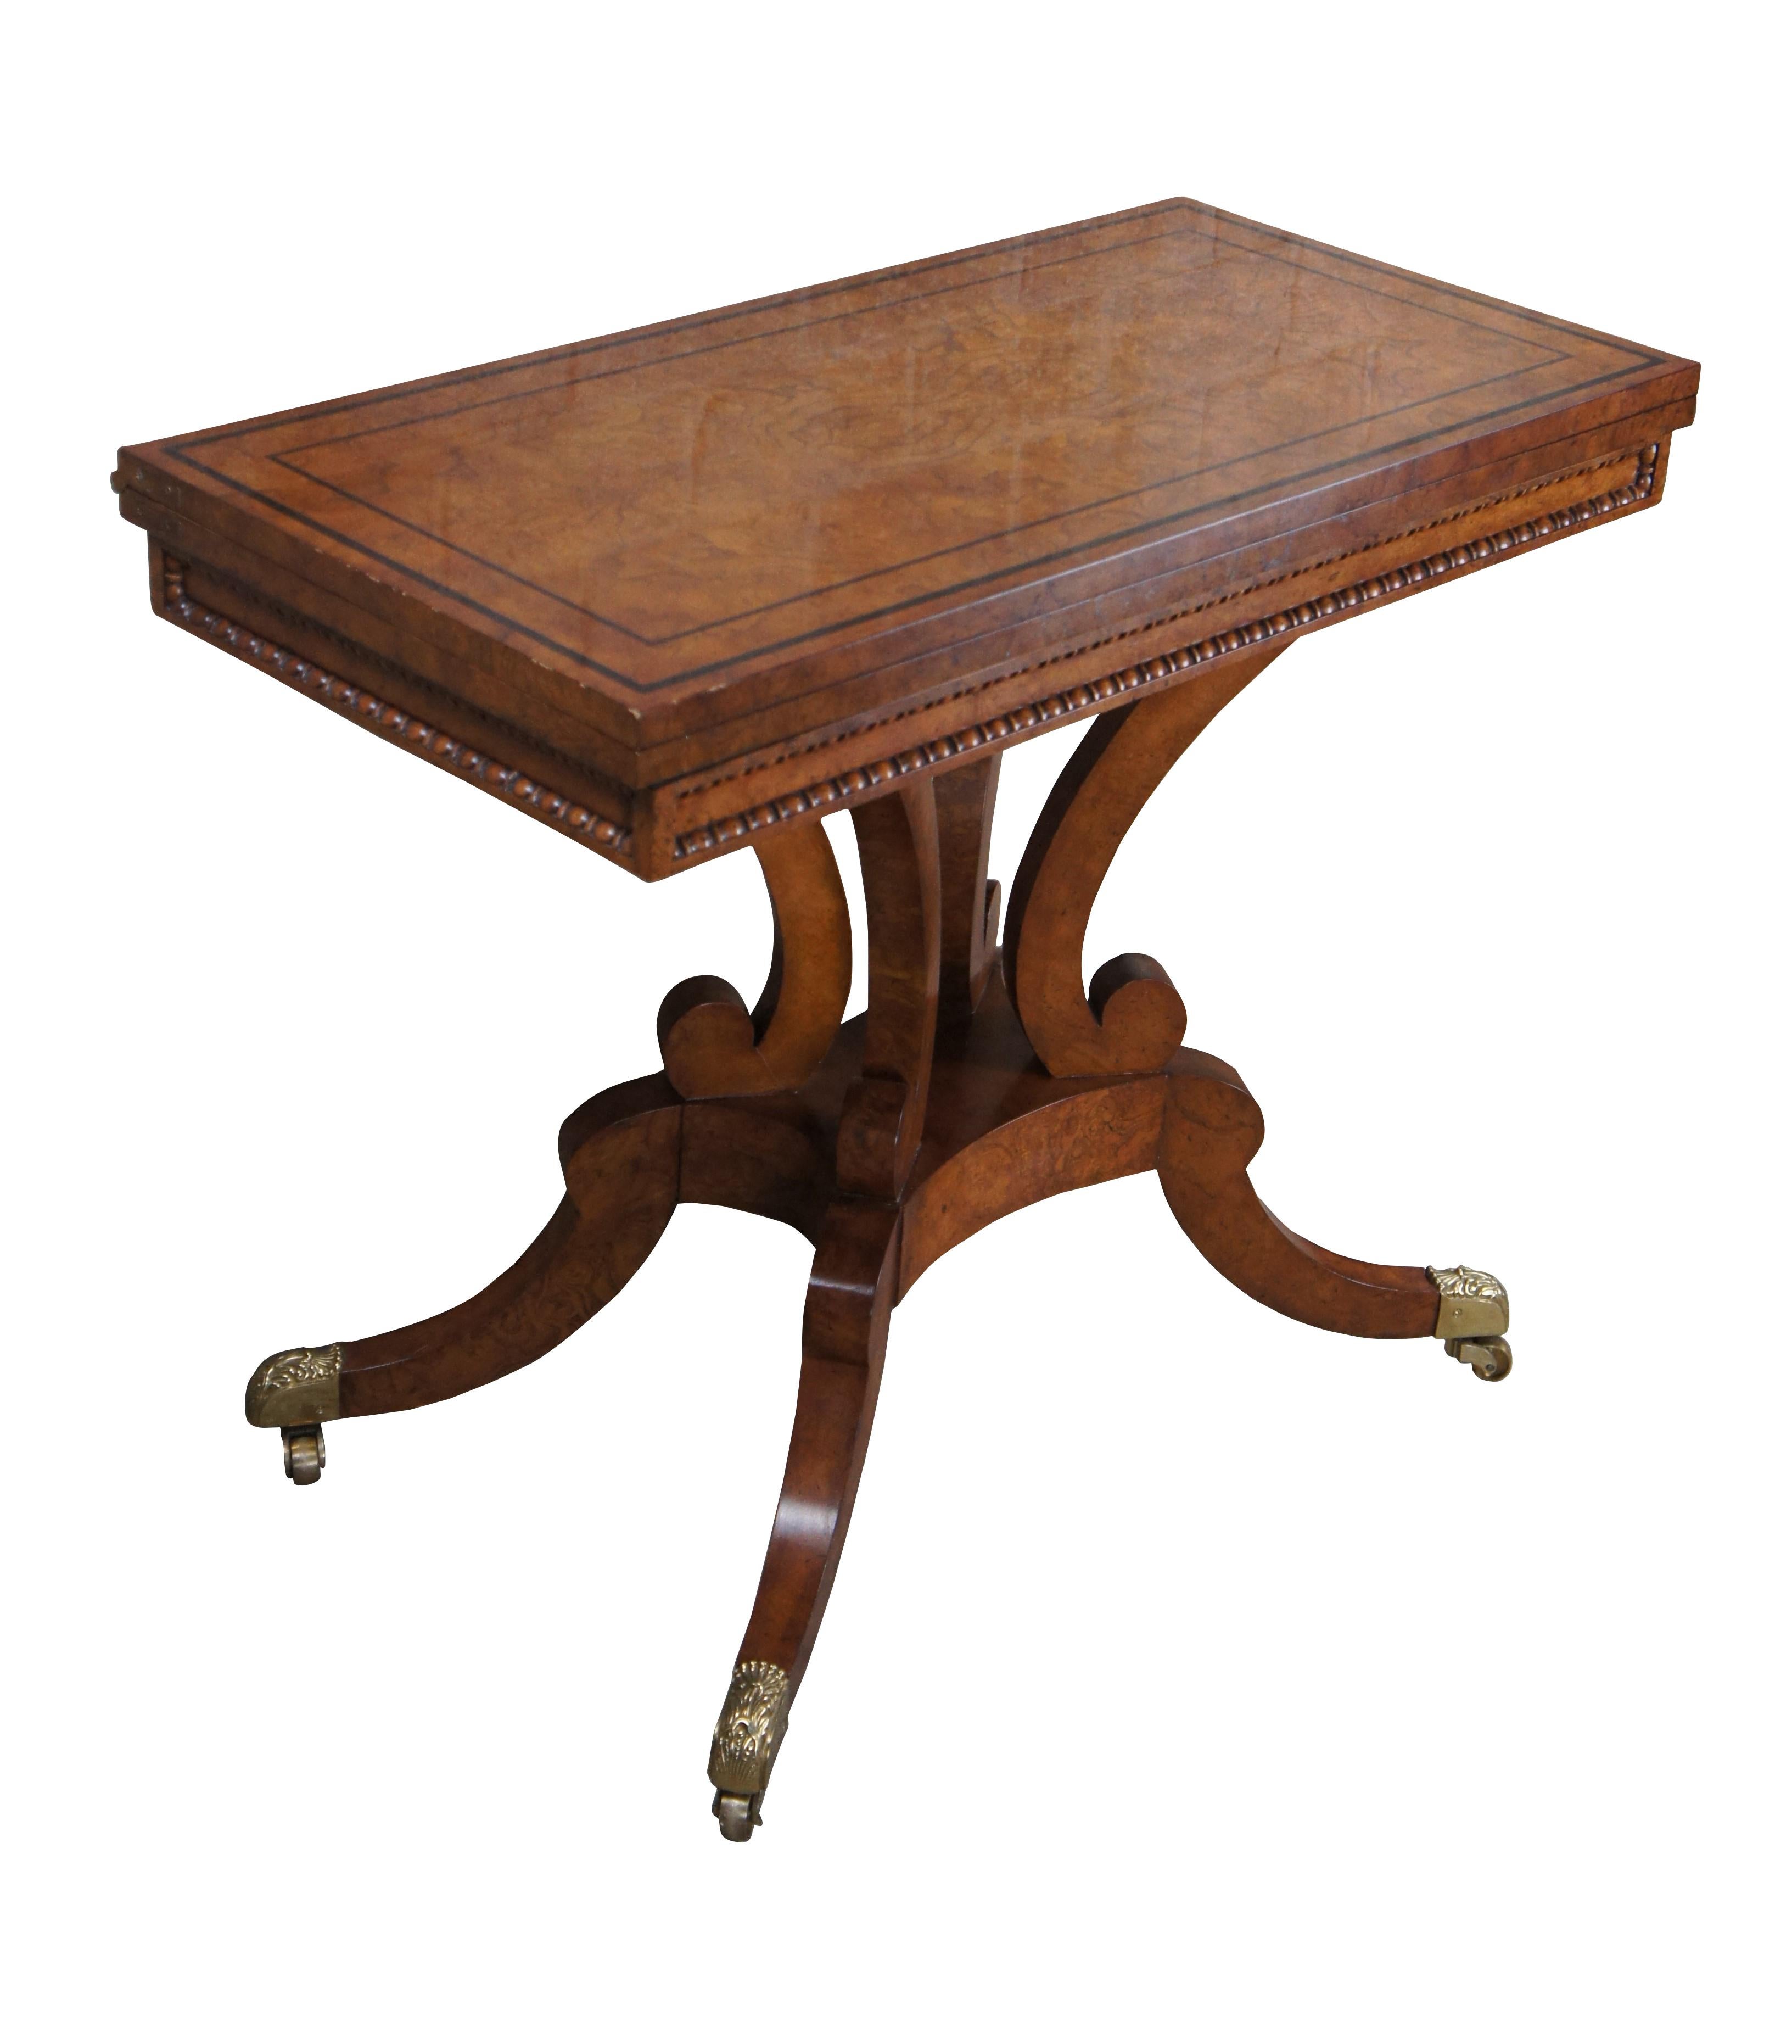 Eine außergewöhnliche englische Regency / Georgian inspiriert Flip Top Spieltisch oder Konsole von Baker Furniture. Das Design ist dem Original von William Trotter aus Edinburgh aus dem Jahr 1815 nachempfunden. 

Die rechteckige, umklappbare Platte